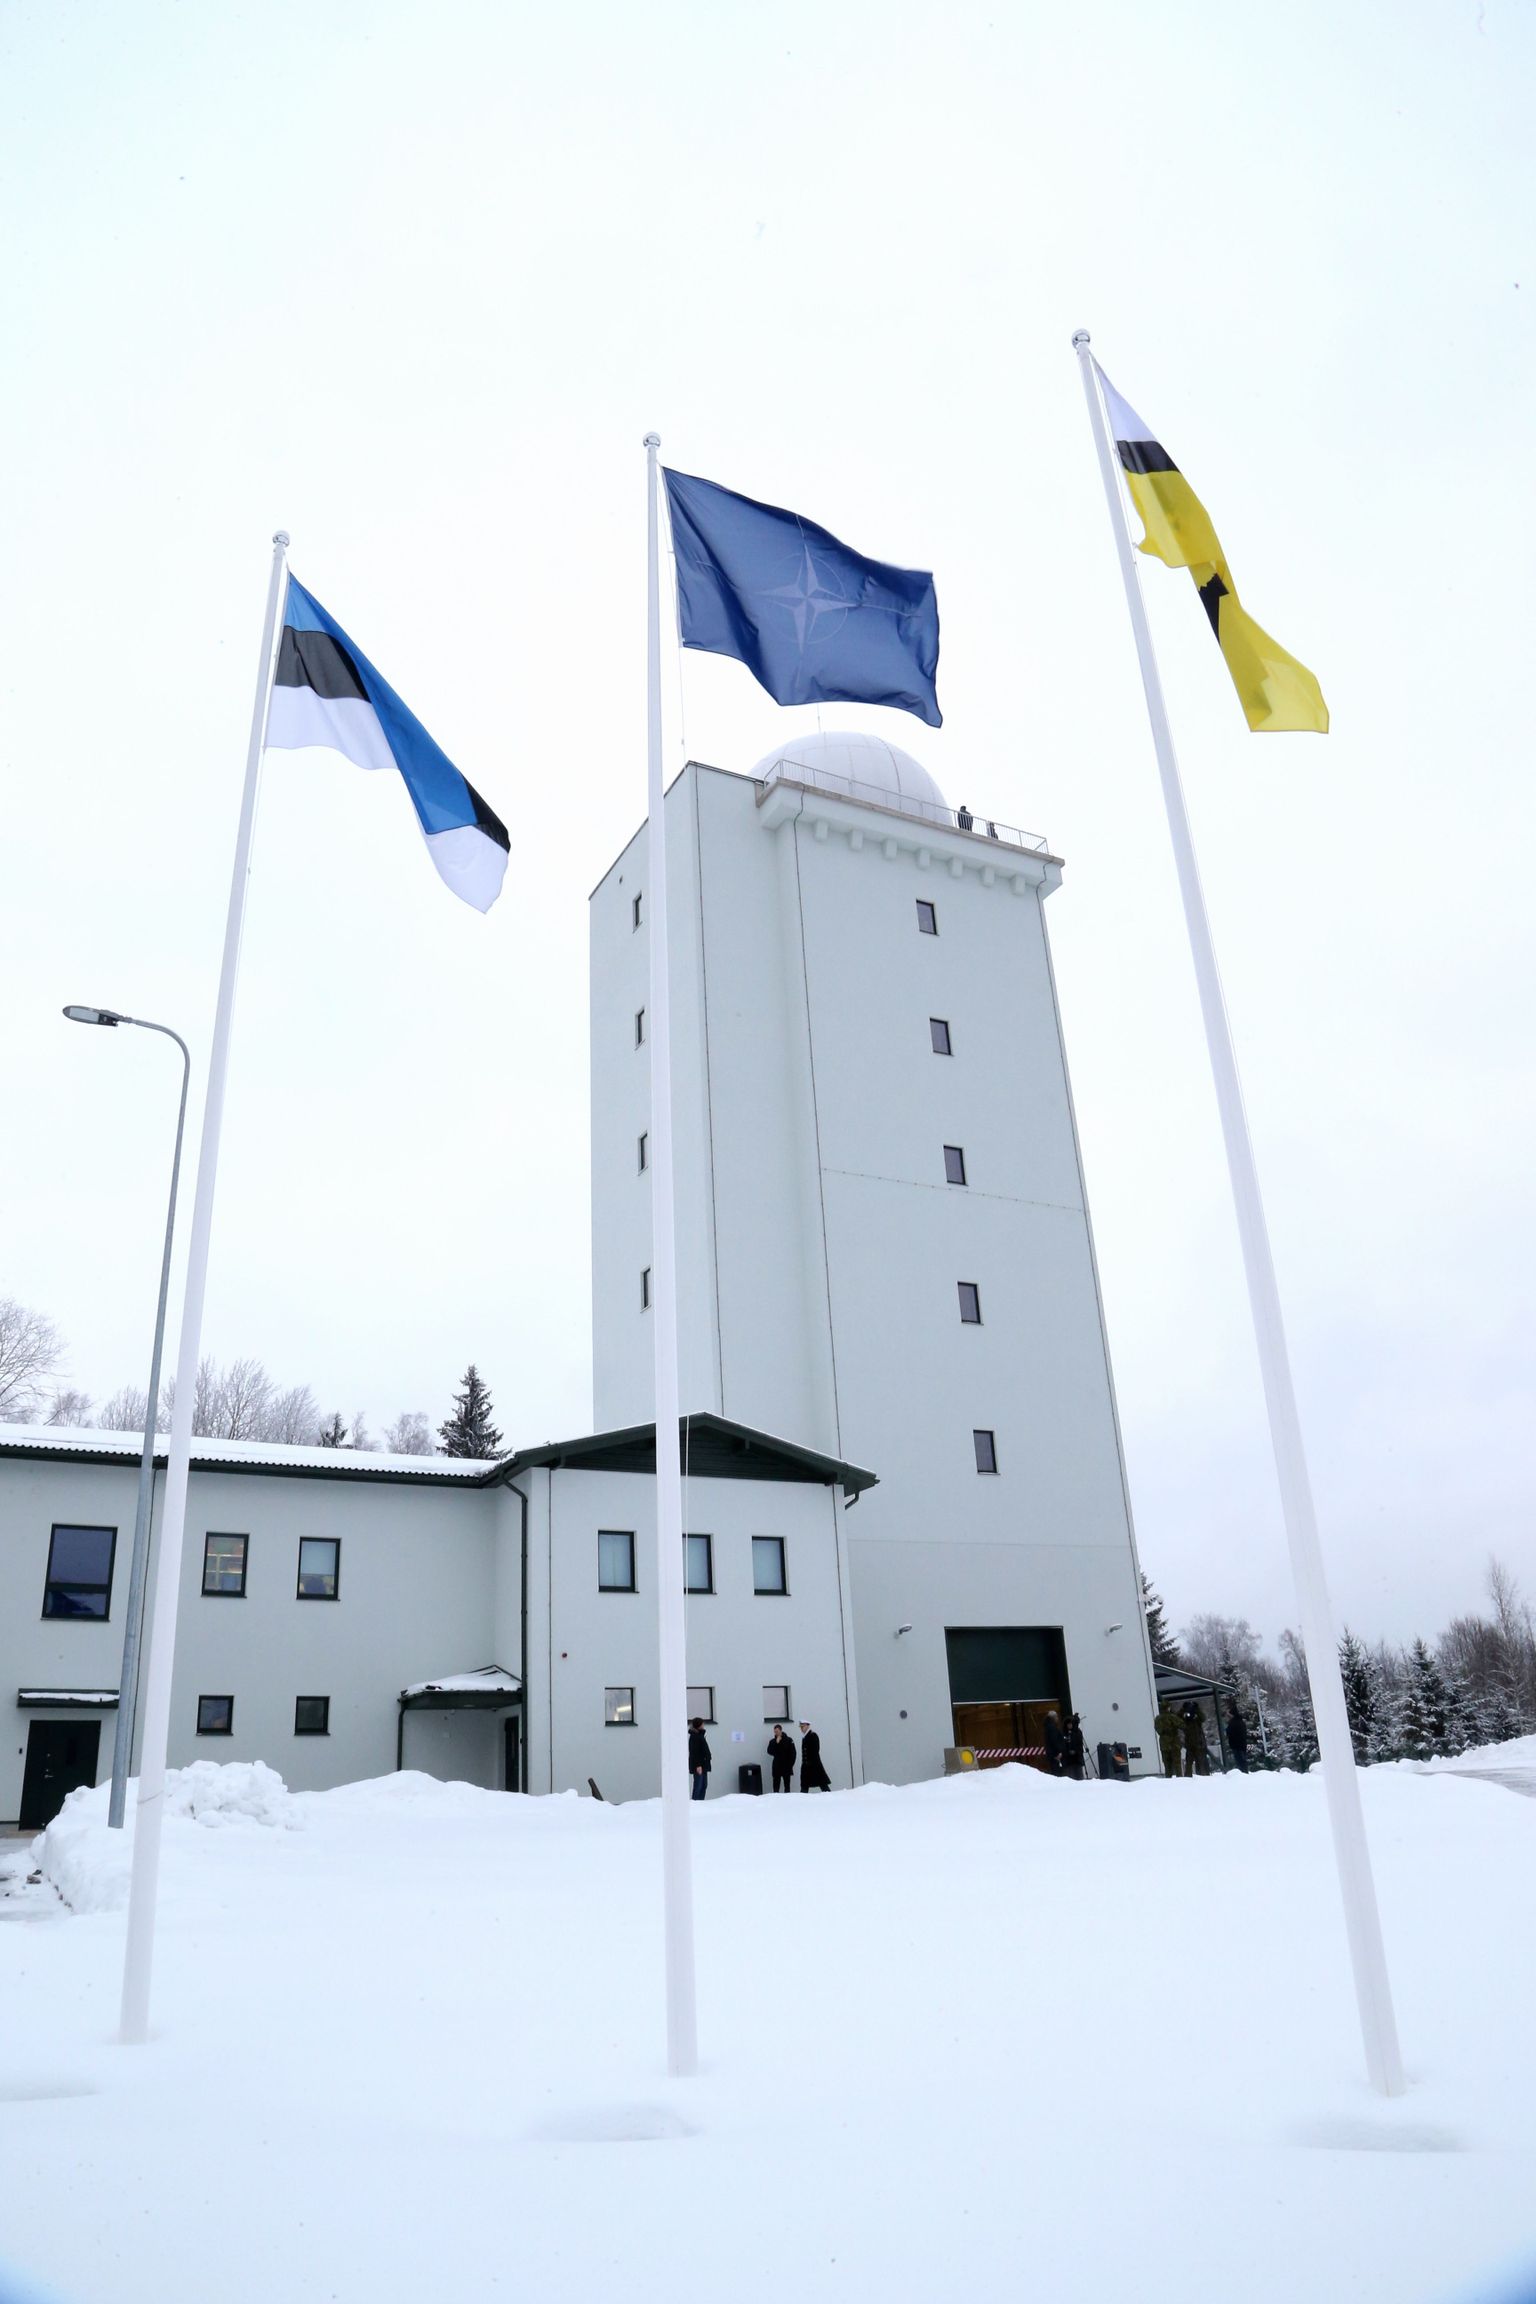 Enam kui 200 meetrit üle merepinna kõrguva Tõikamäe otsa ehitas kaitseministeerium radarijaama, mis täitis puuduva lüli Eesti õhuseires.